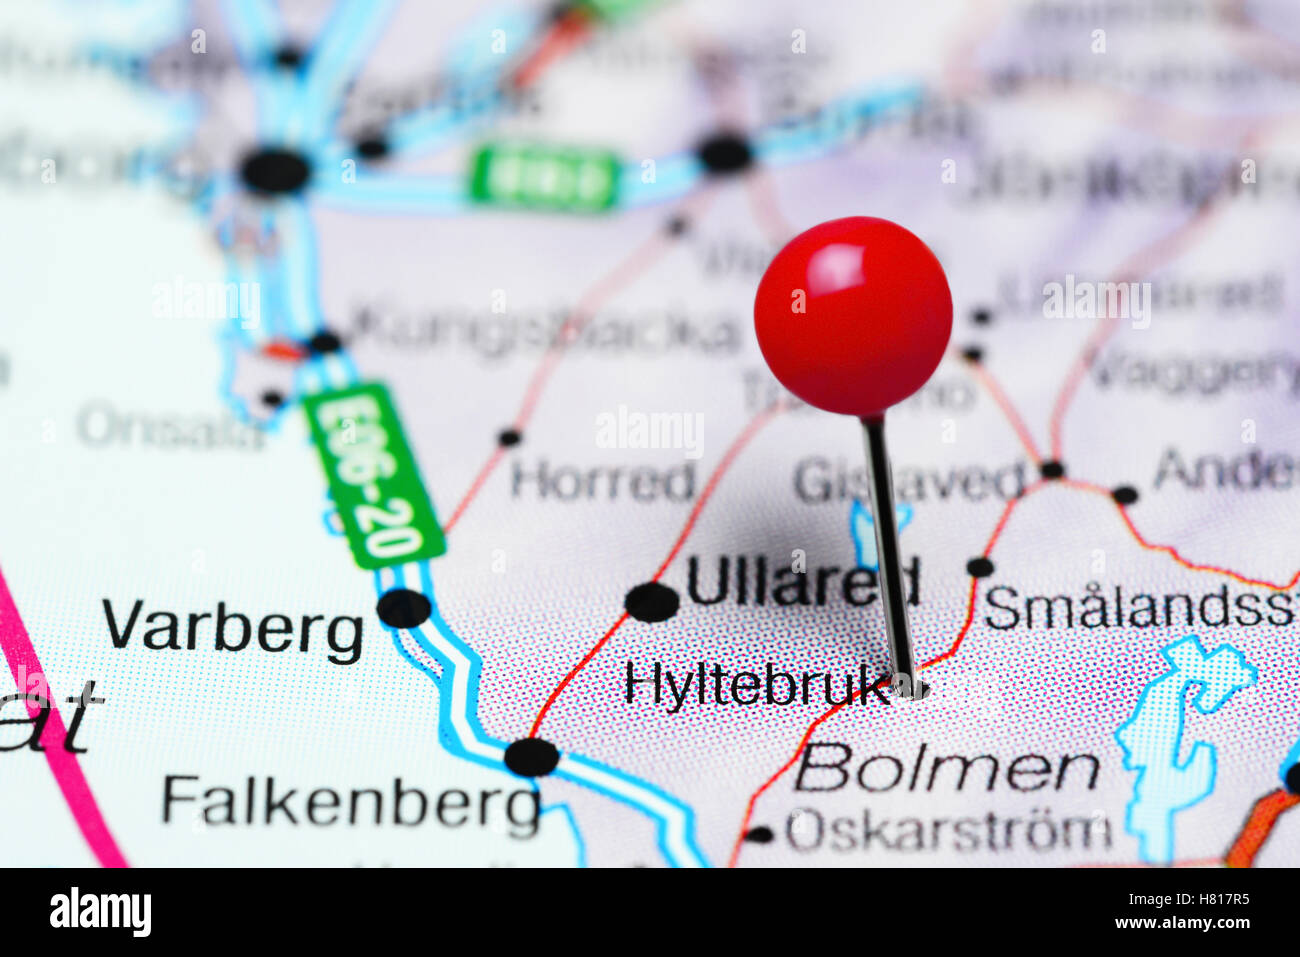 Hyltebruk pinned on a map of Sweden Stock Photo